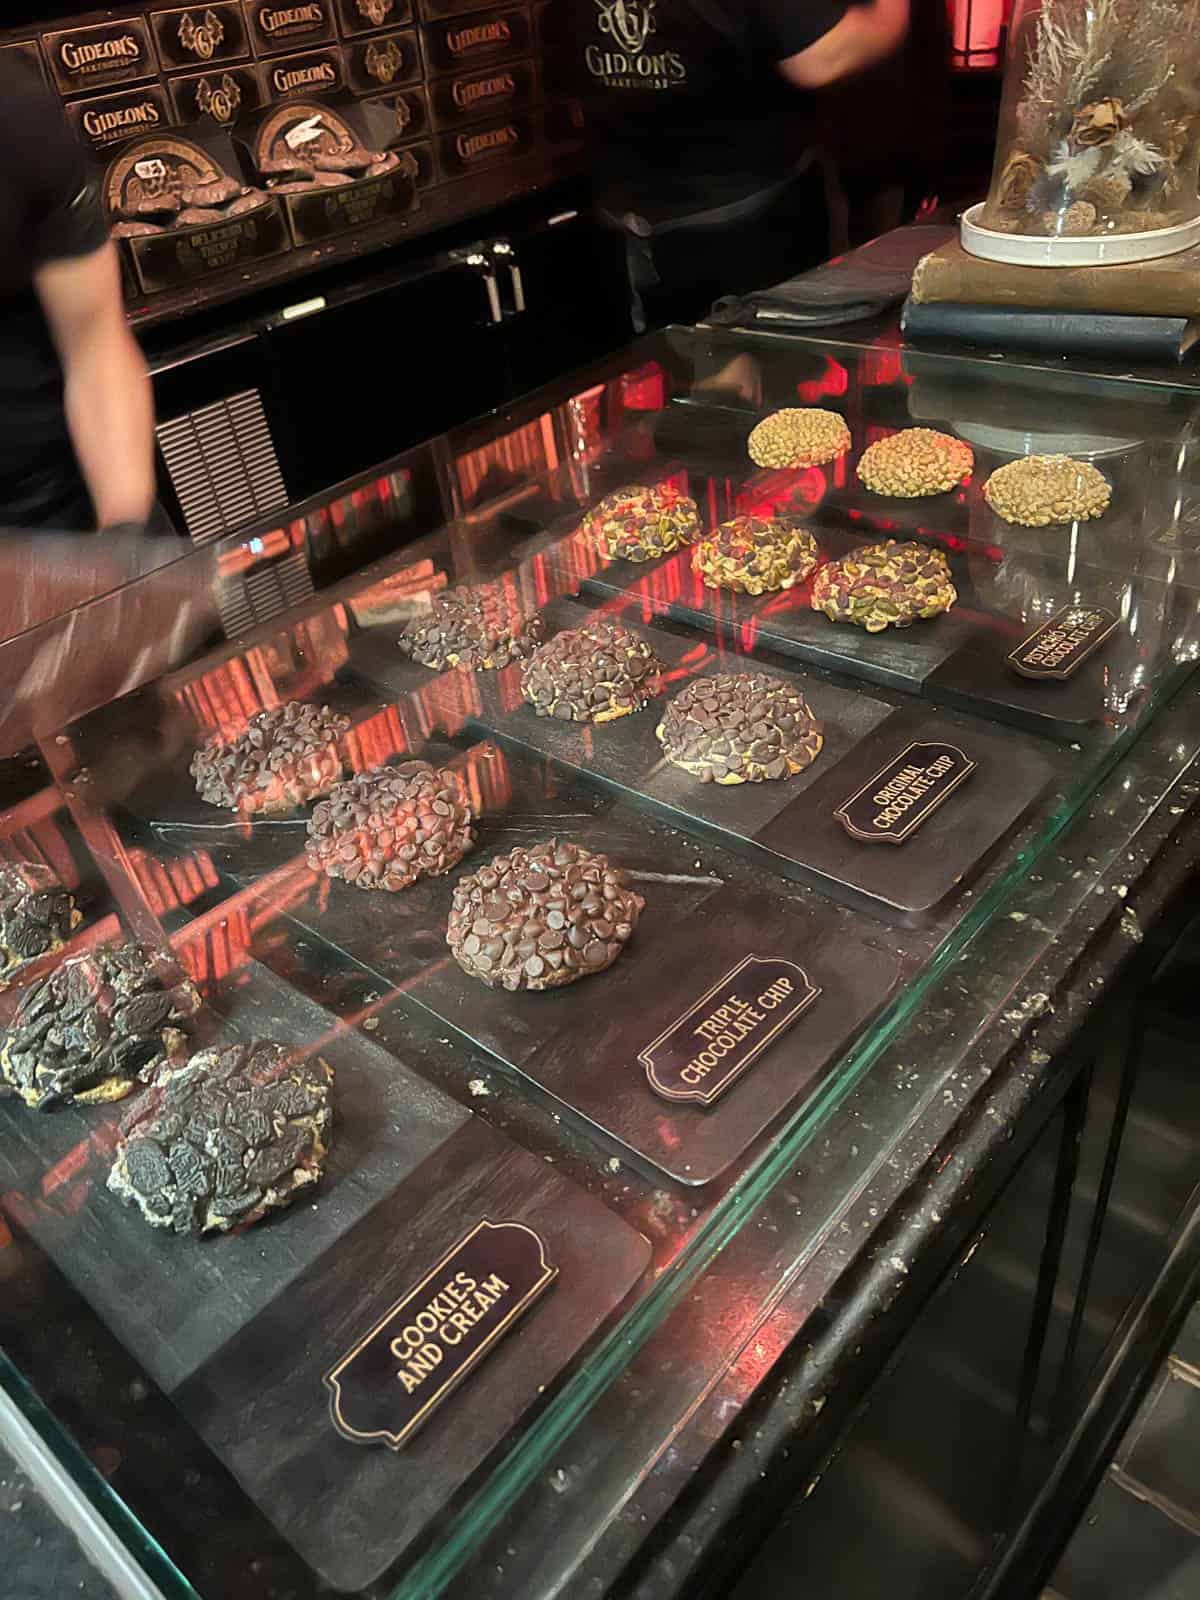 Cookies on display at Gideon's Bakeshop at Disney Springs.